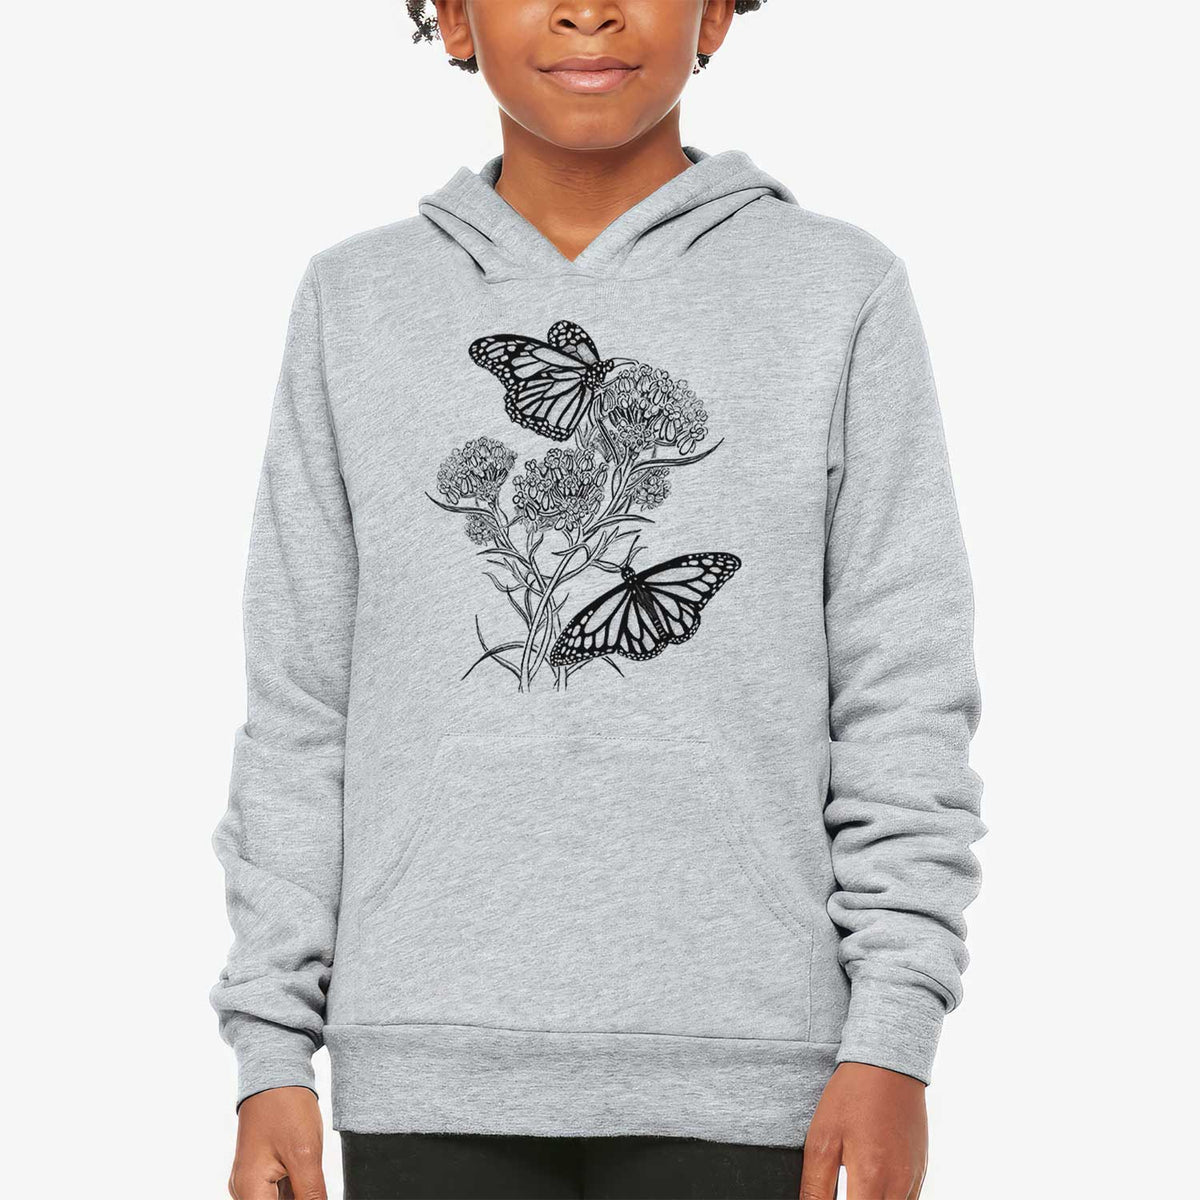 Narrowleaf Milkweed with Monarchs - Youth Hoodie Sweatshirt